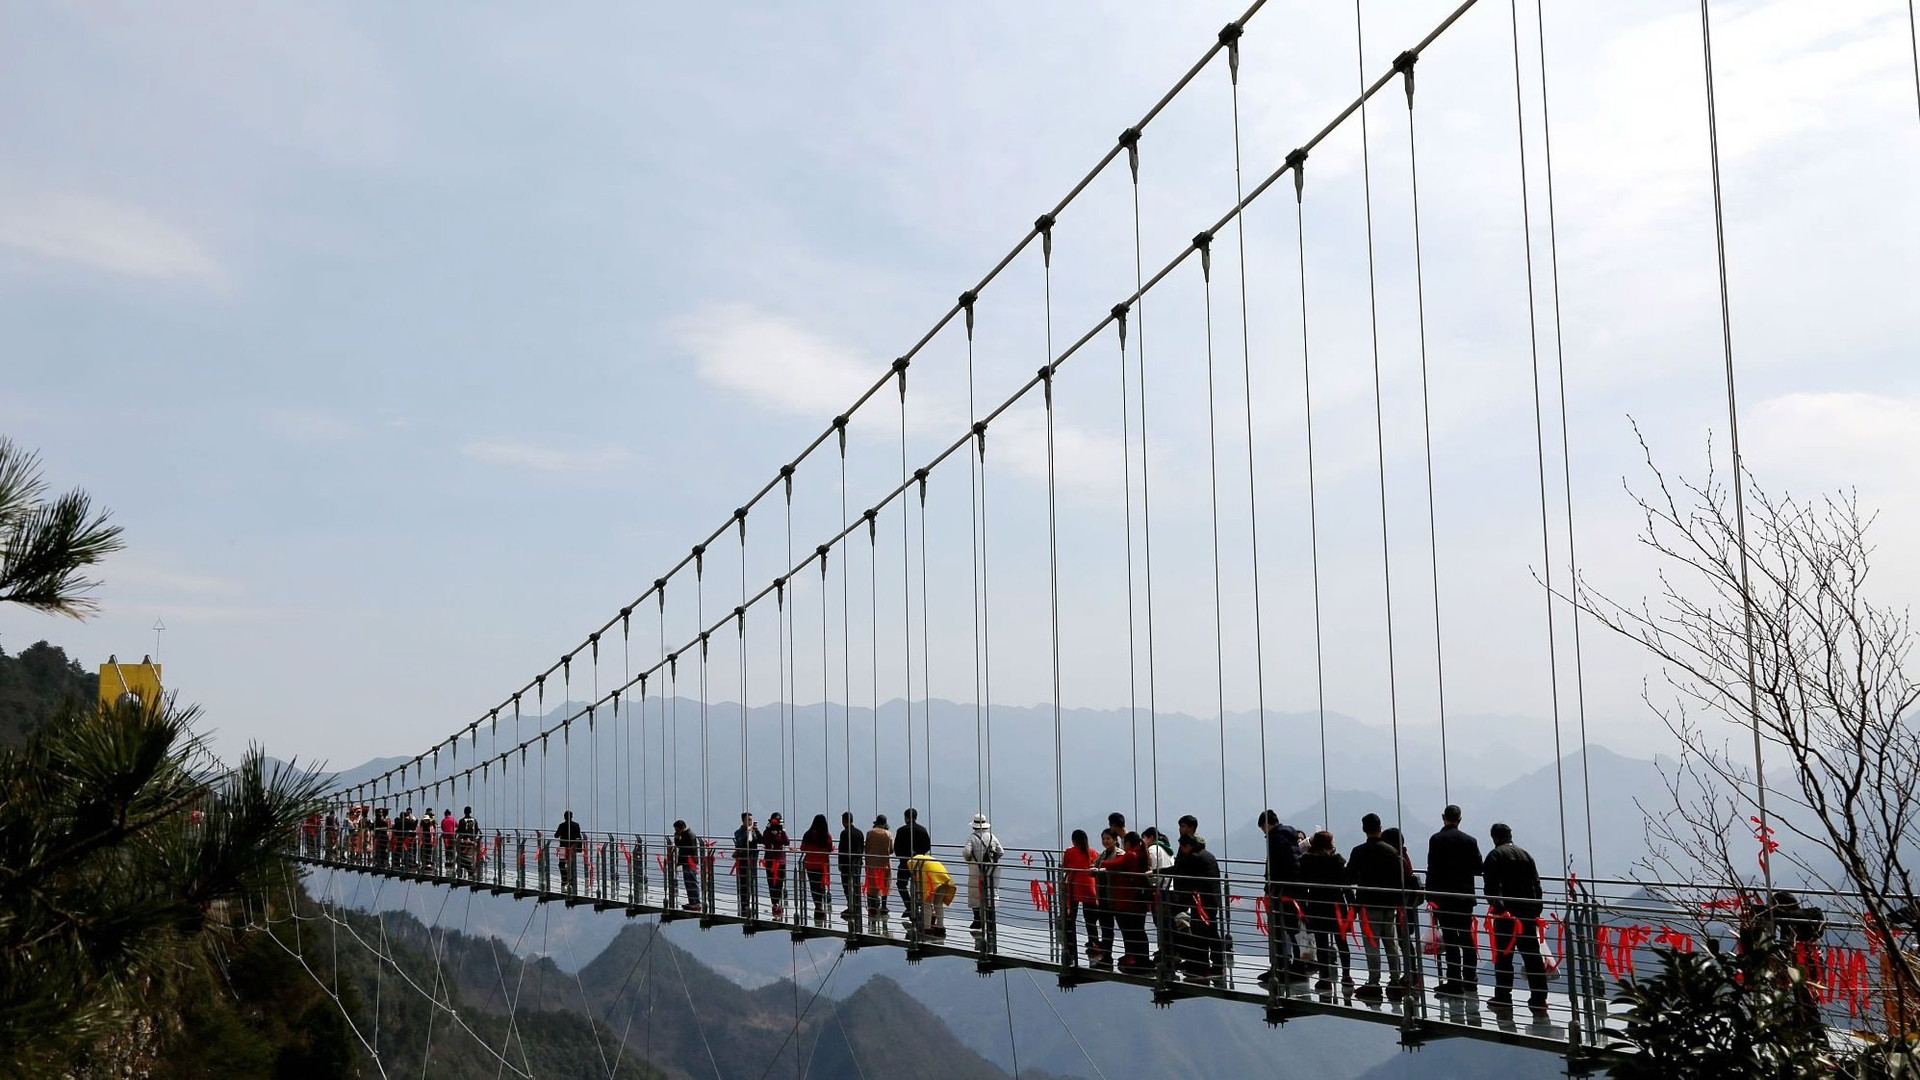 Chỉ mất 38 tỷ đồng, Trung Quốc xây thành công 'cầu bằng kính’ cao gần 2.000 mét khiến thế giới ngỡ ngàng - Ảnh 2.